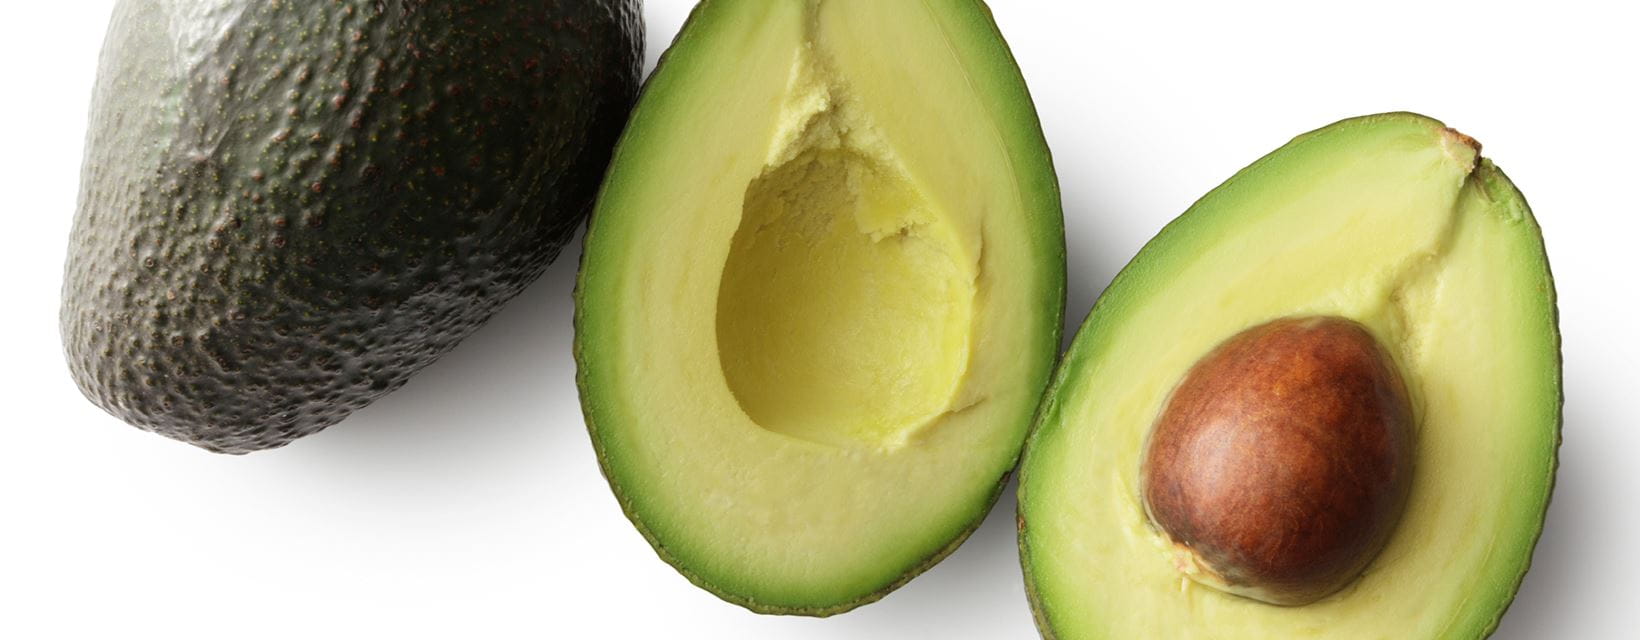 Avocado Oil For Skin and ripe avocados